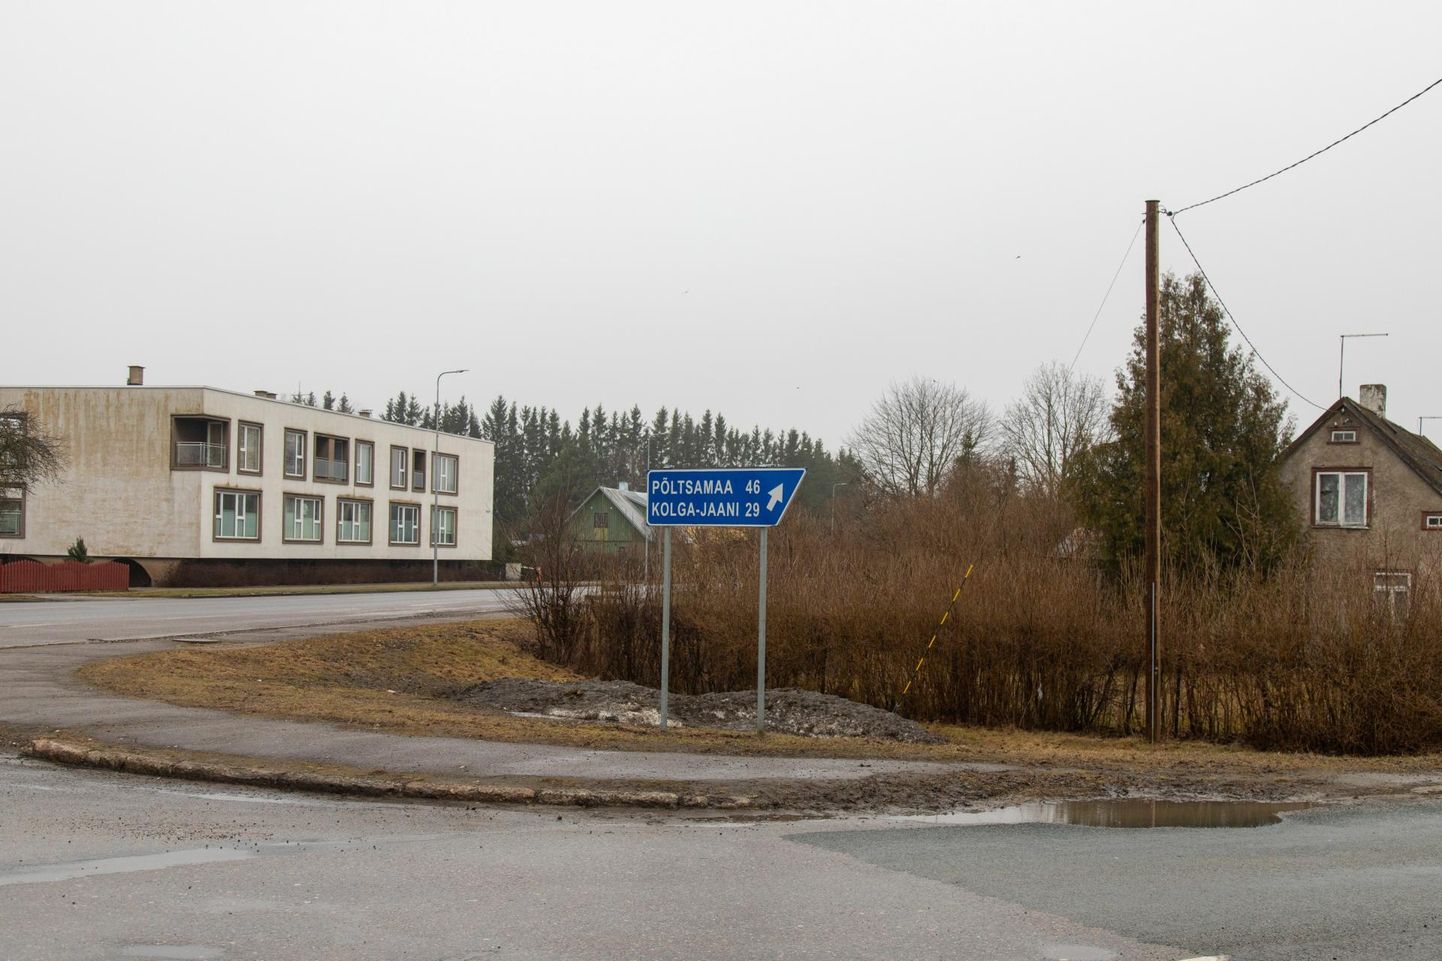 Uue tankla ja kaupluse tarbeks on Olerexi kaubamärgi all tegutsev ettevõte ostnud Viljandis Tallinna tänava ja Musta tee hargnemiskohas asuva kinnistu.